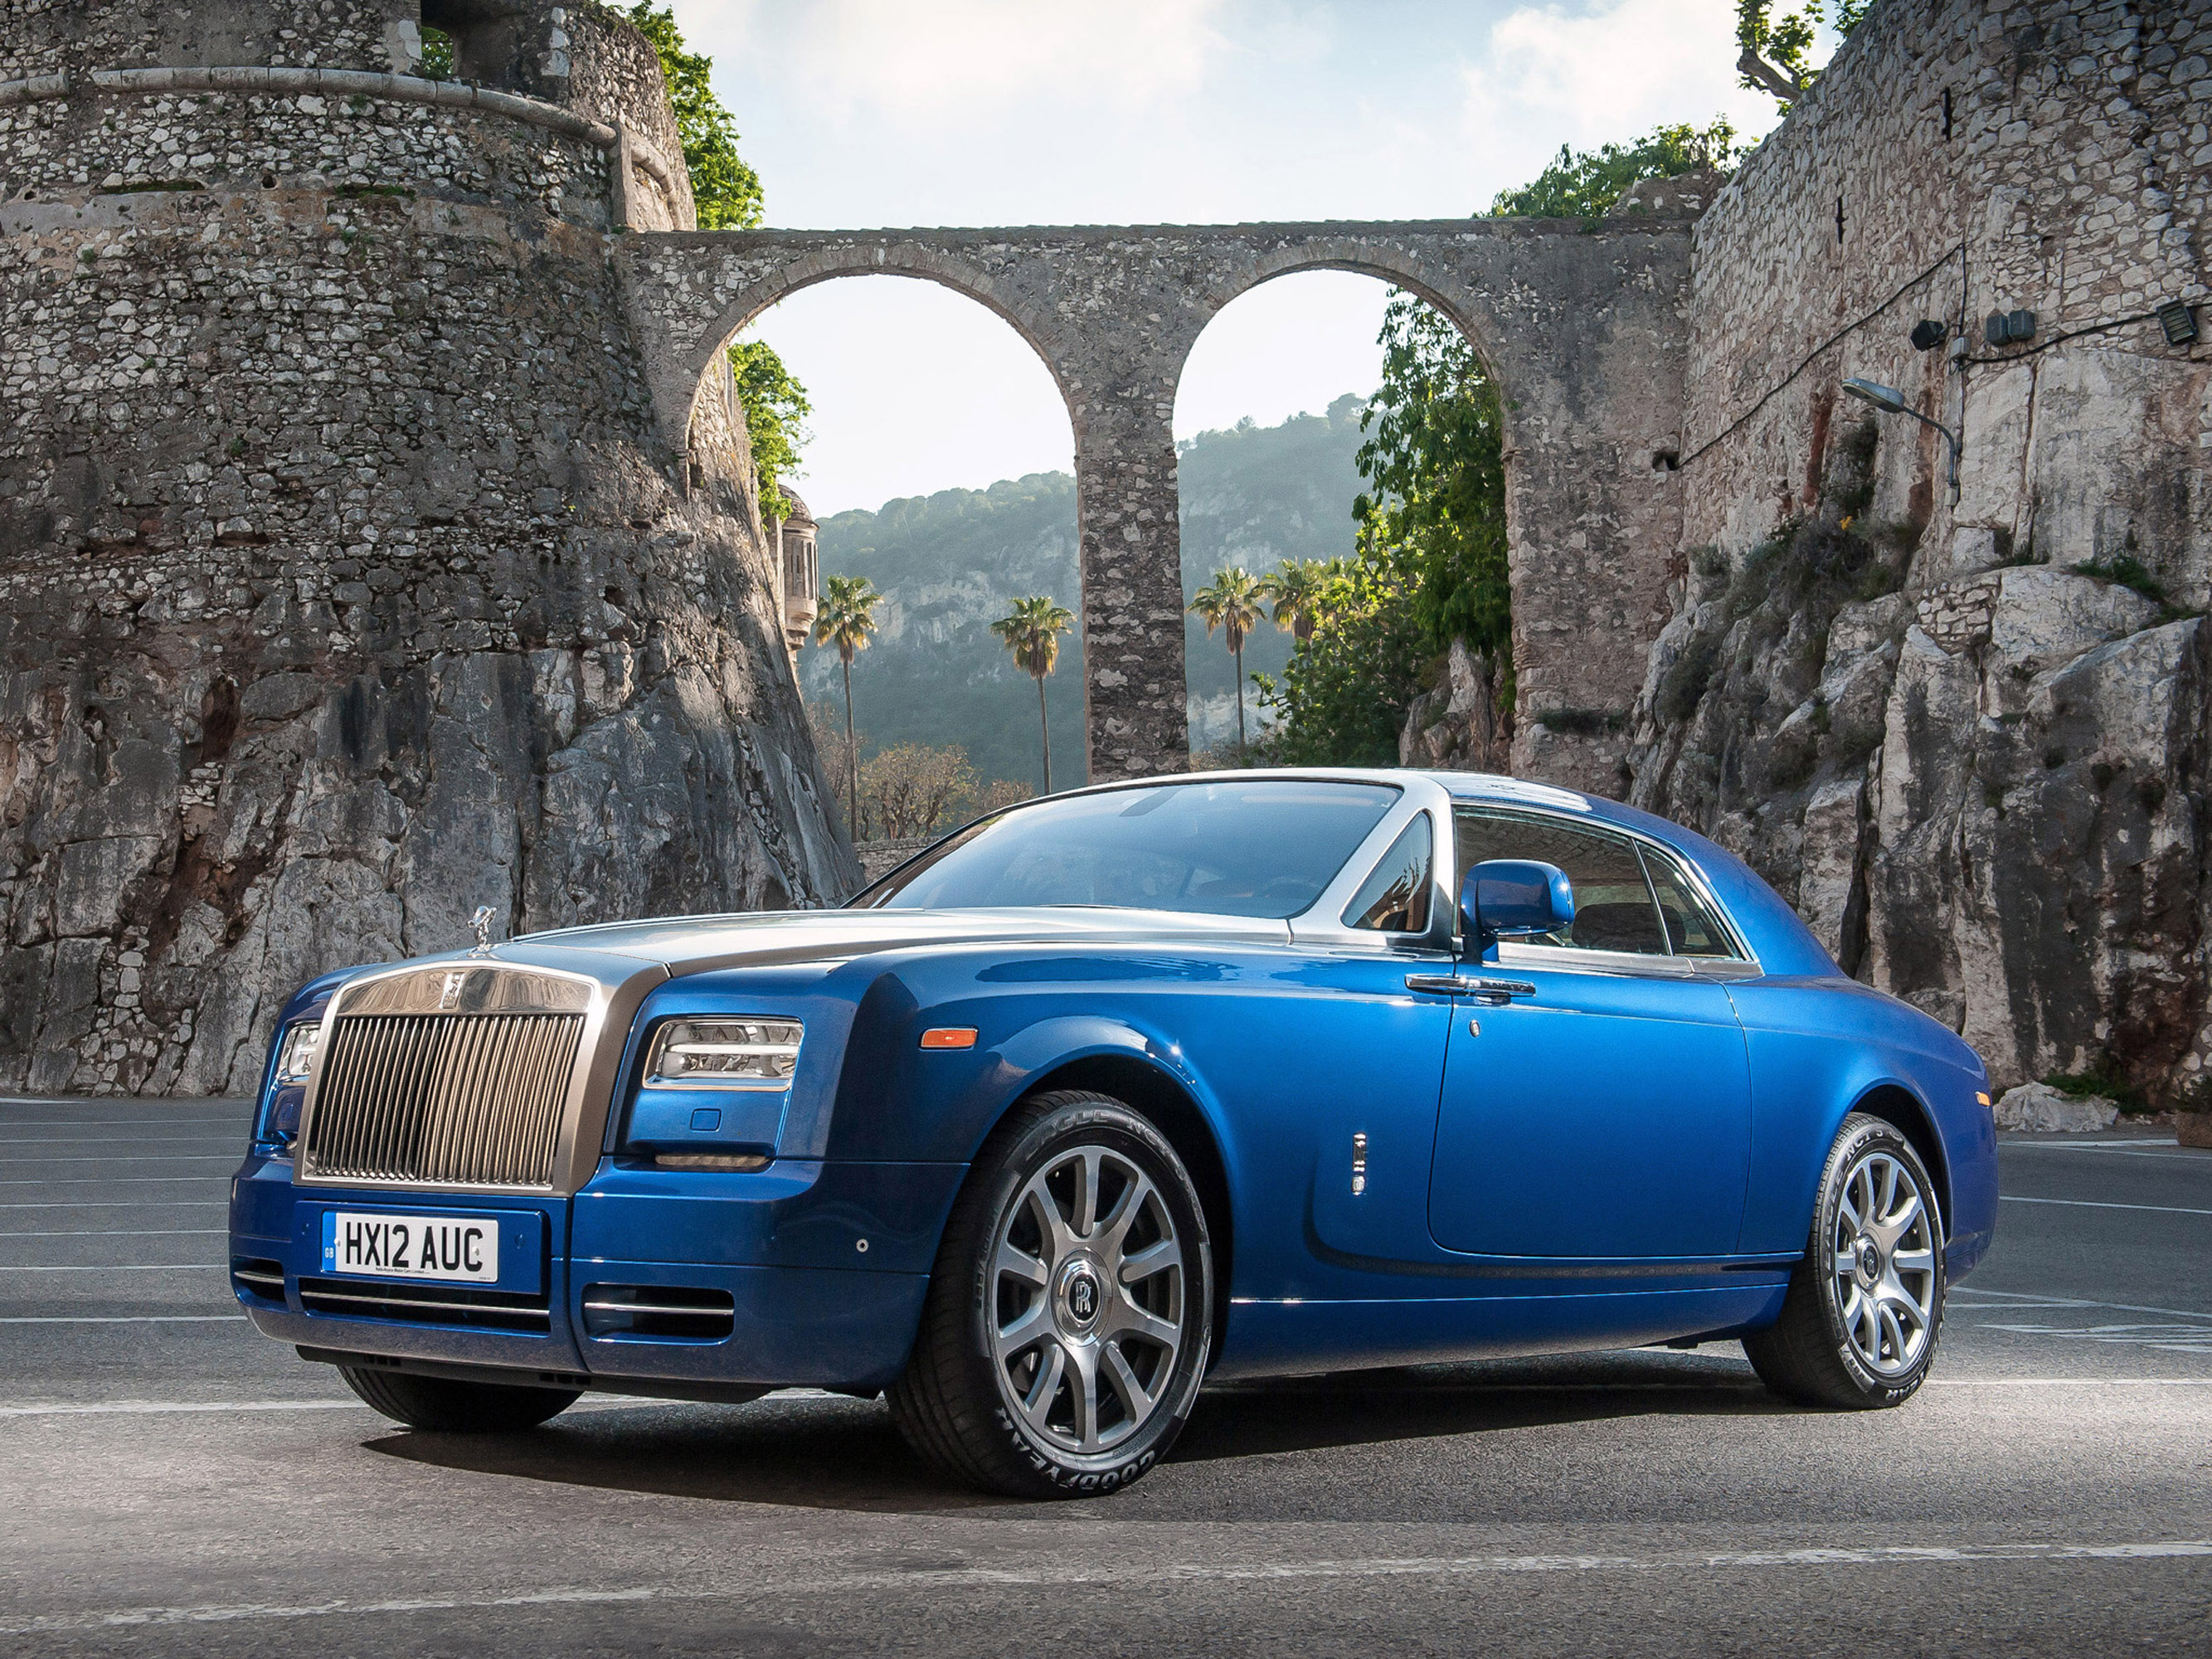 Роллс ройс купе. Машина Rolls Royce Phantom. Rolls Royce Phantom Coupe 2012. Rolls Royce Phantom купе.